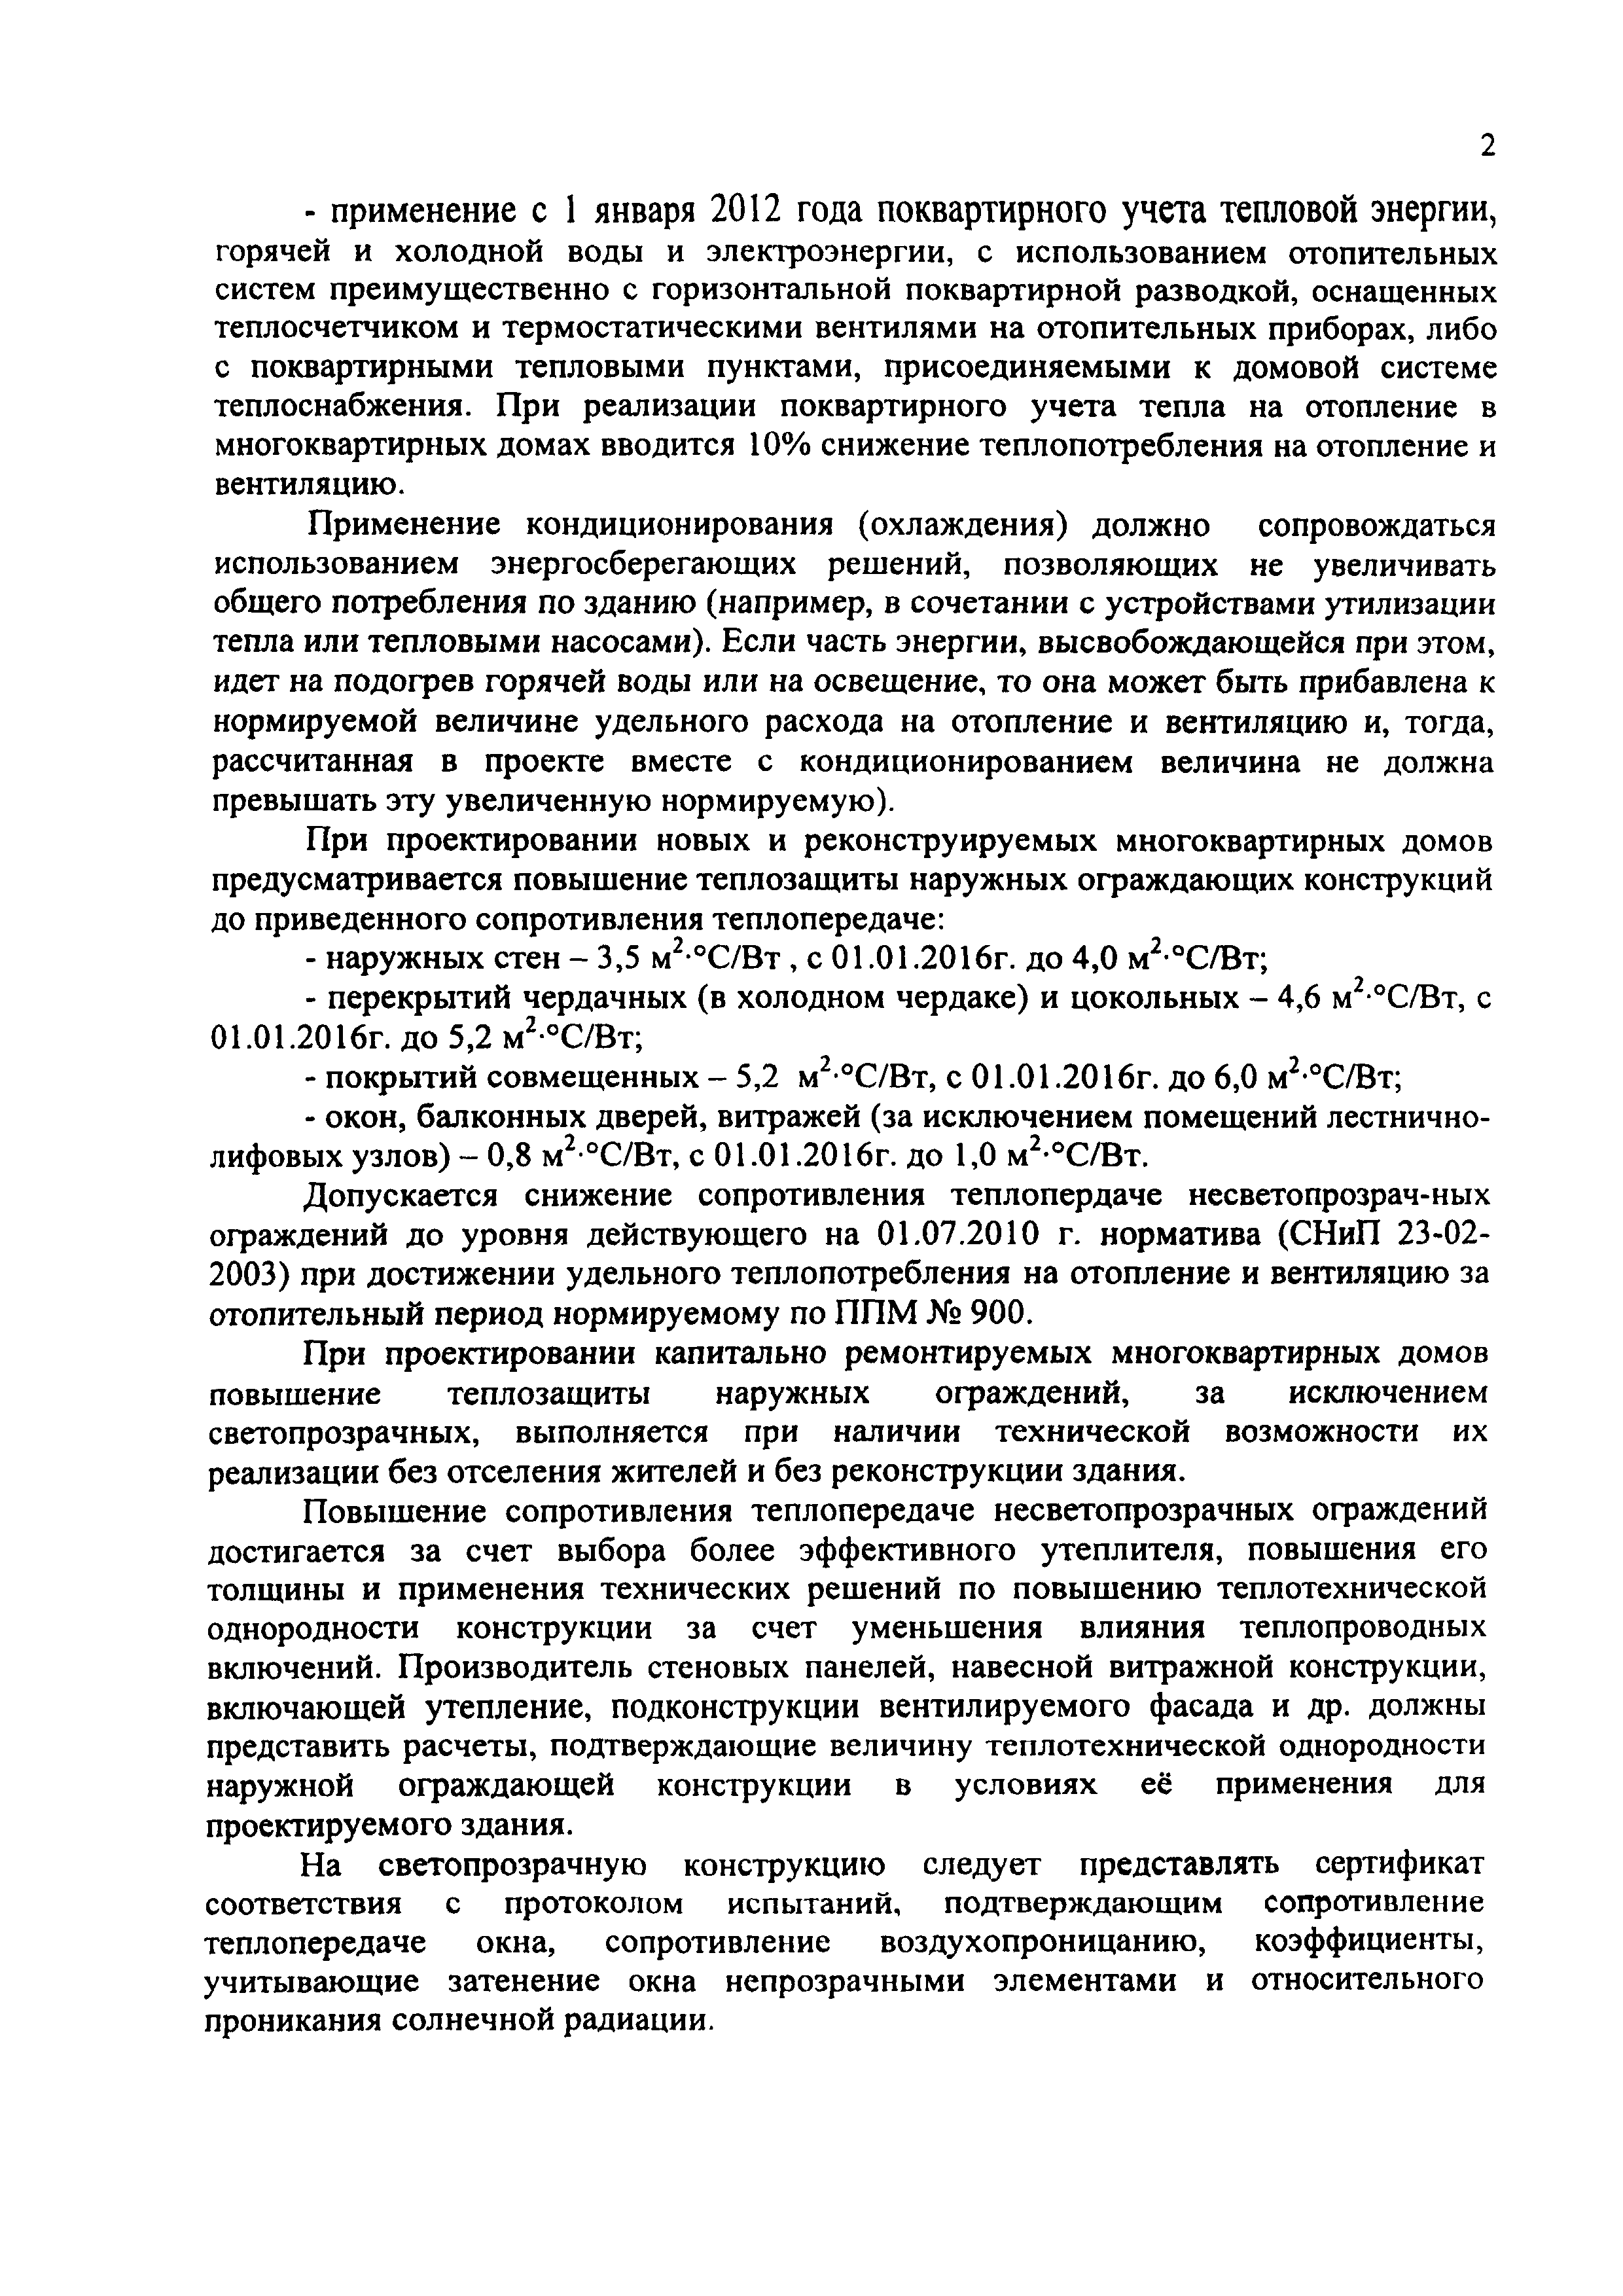 Информационное письмо МГЭ-30/1431